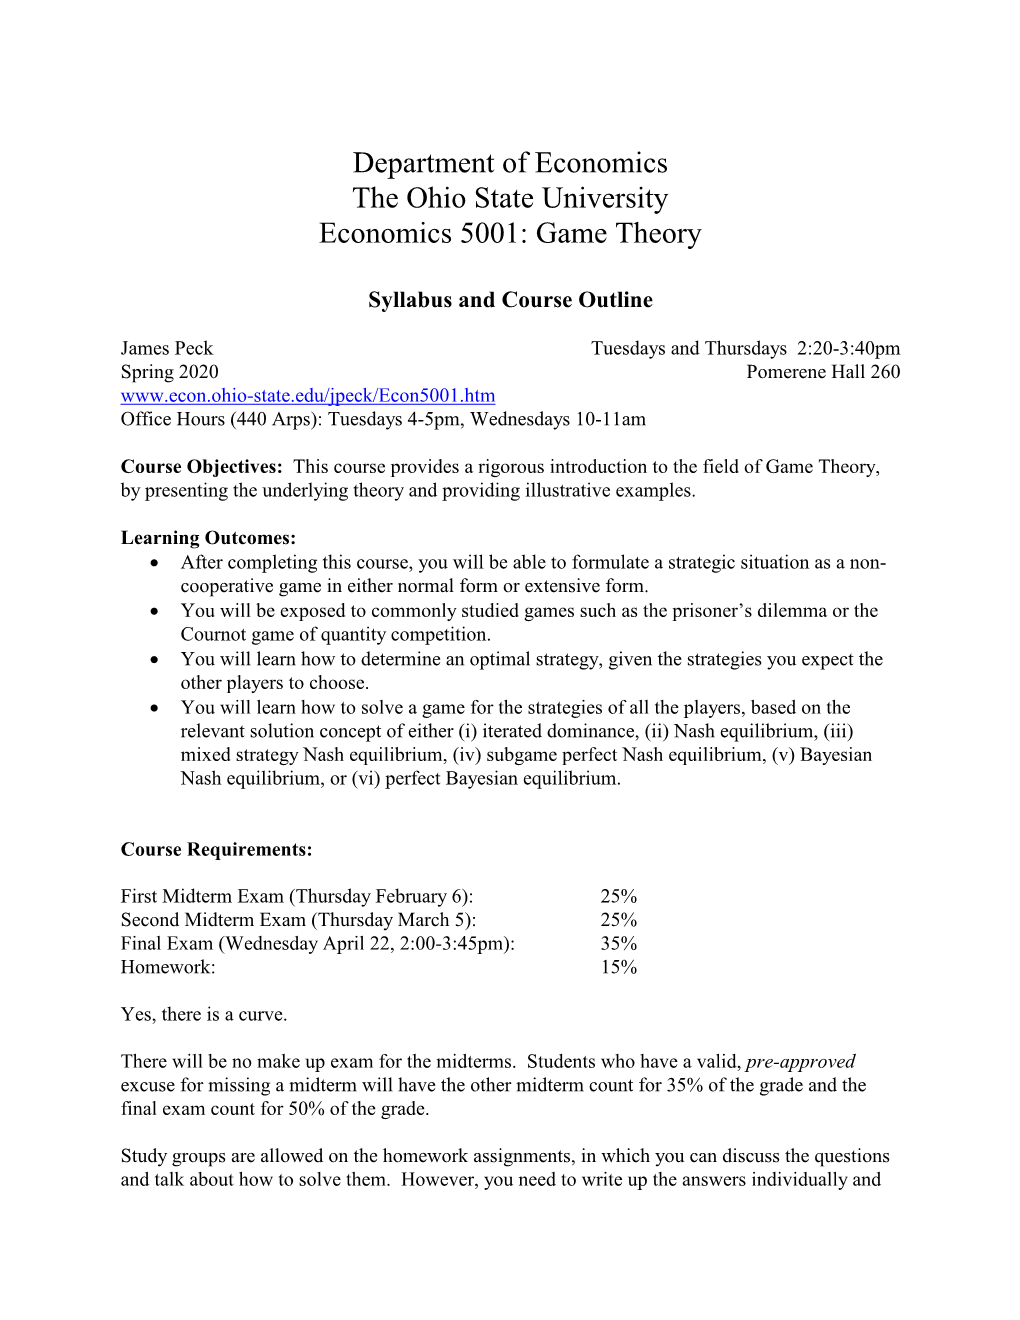 Department of Economics the Ohio State University Economics 5001: Game Theory